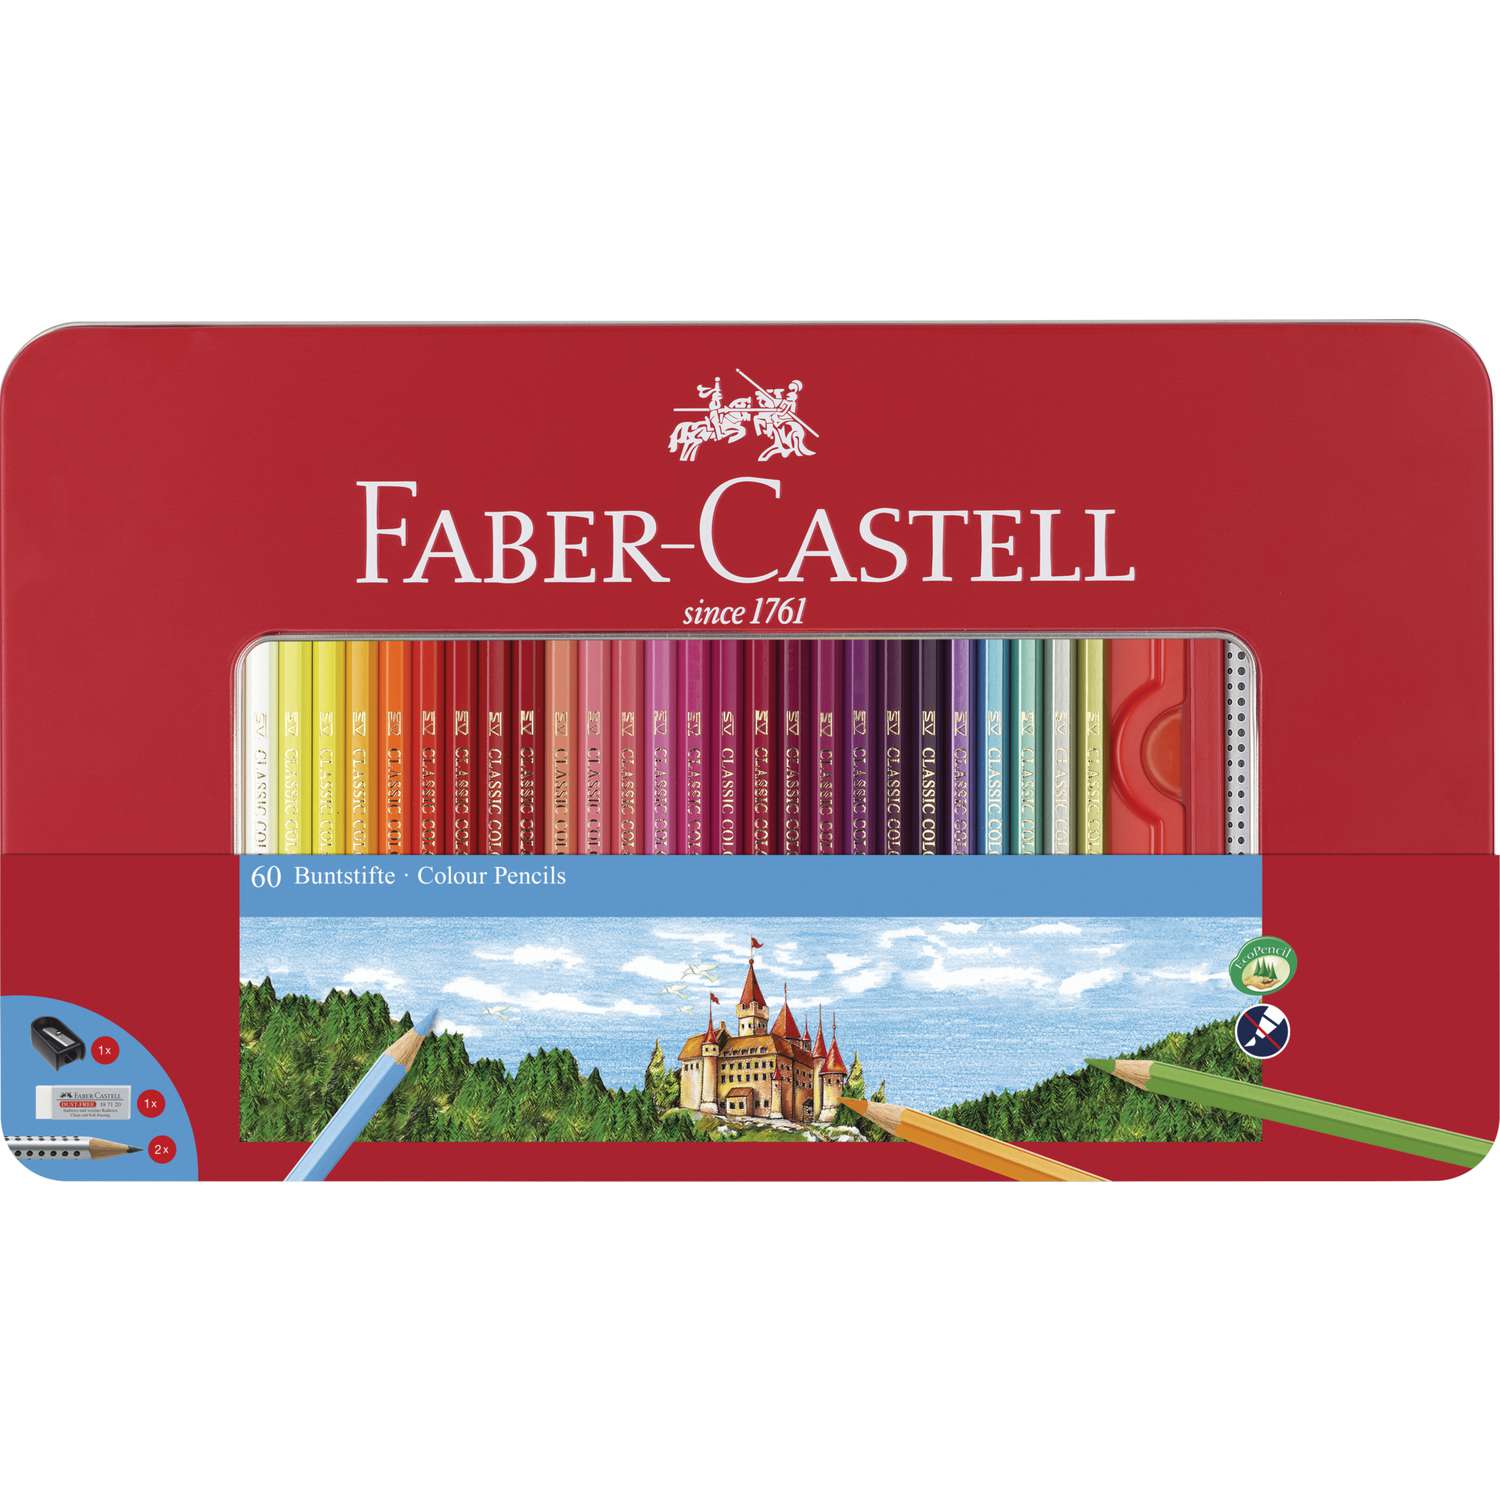 Faber-castell gomme de couleur forme ergonomique